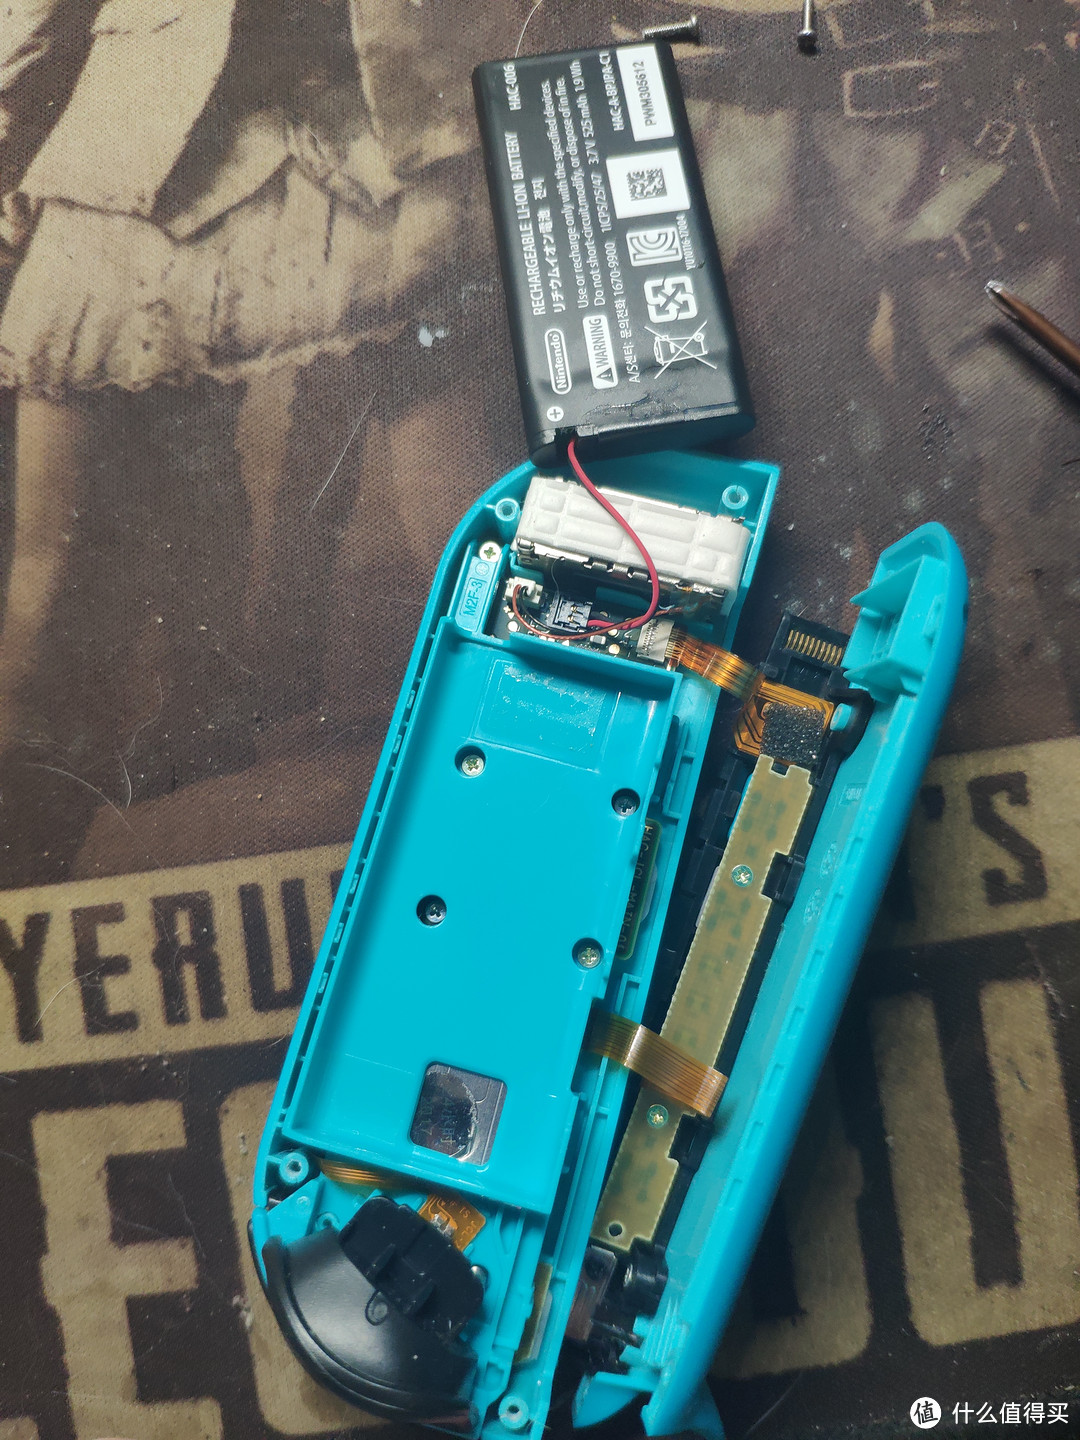 电池甩那头去 为什么不拆呢 因为我也不知道怎么拆 电池卡扣很麻烦 已经见了有哥们底座弄下来的了 要锡焊上去 超麻烦